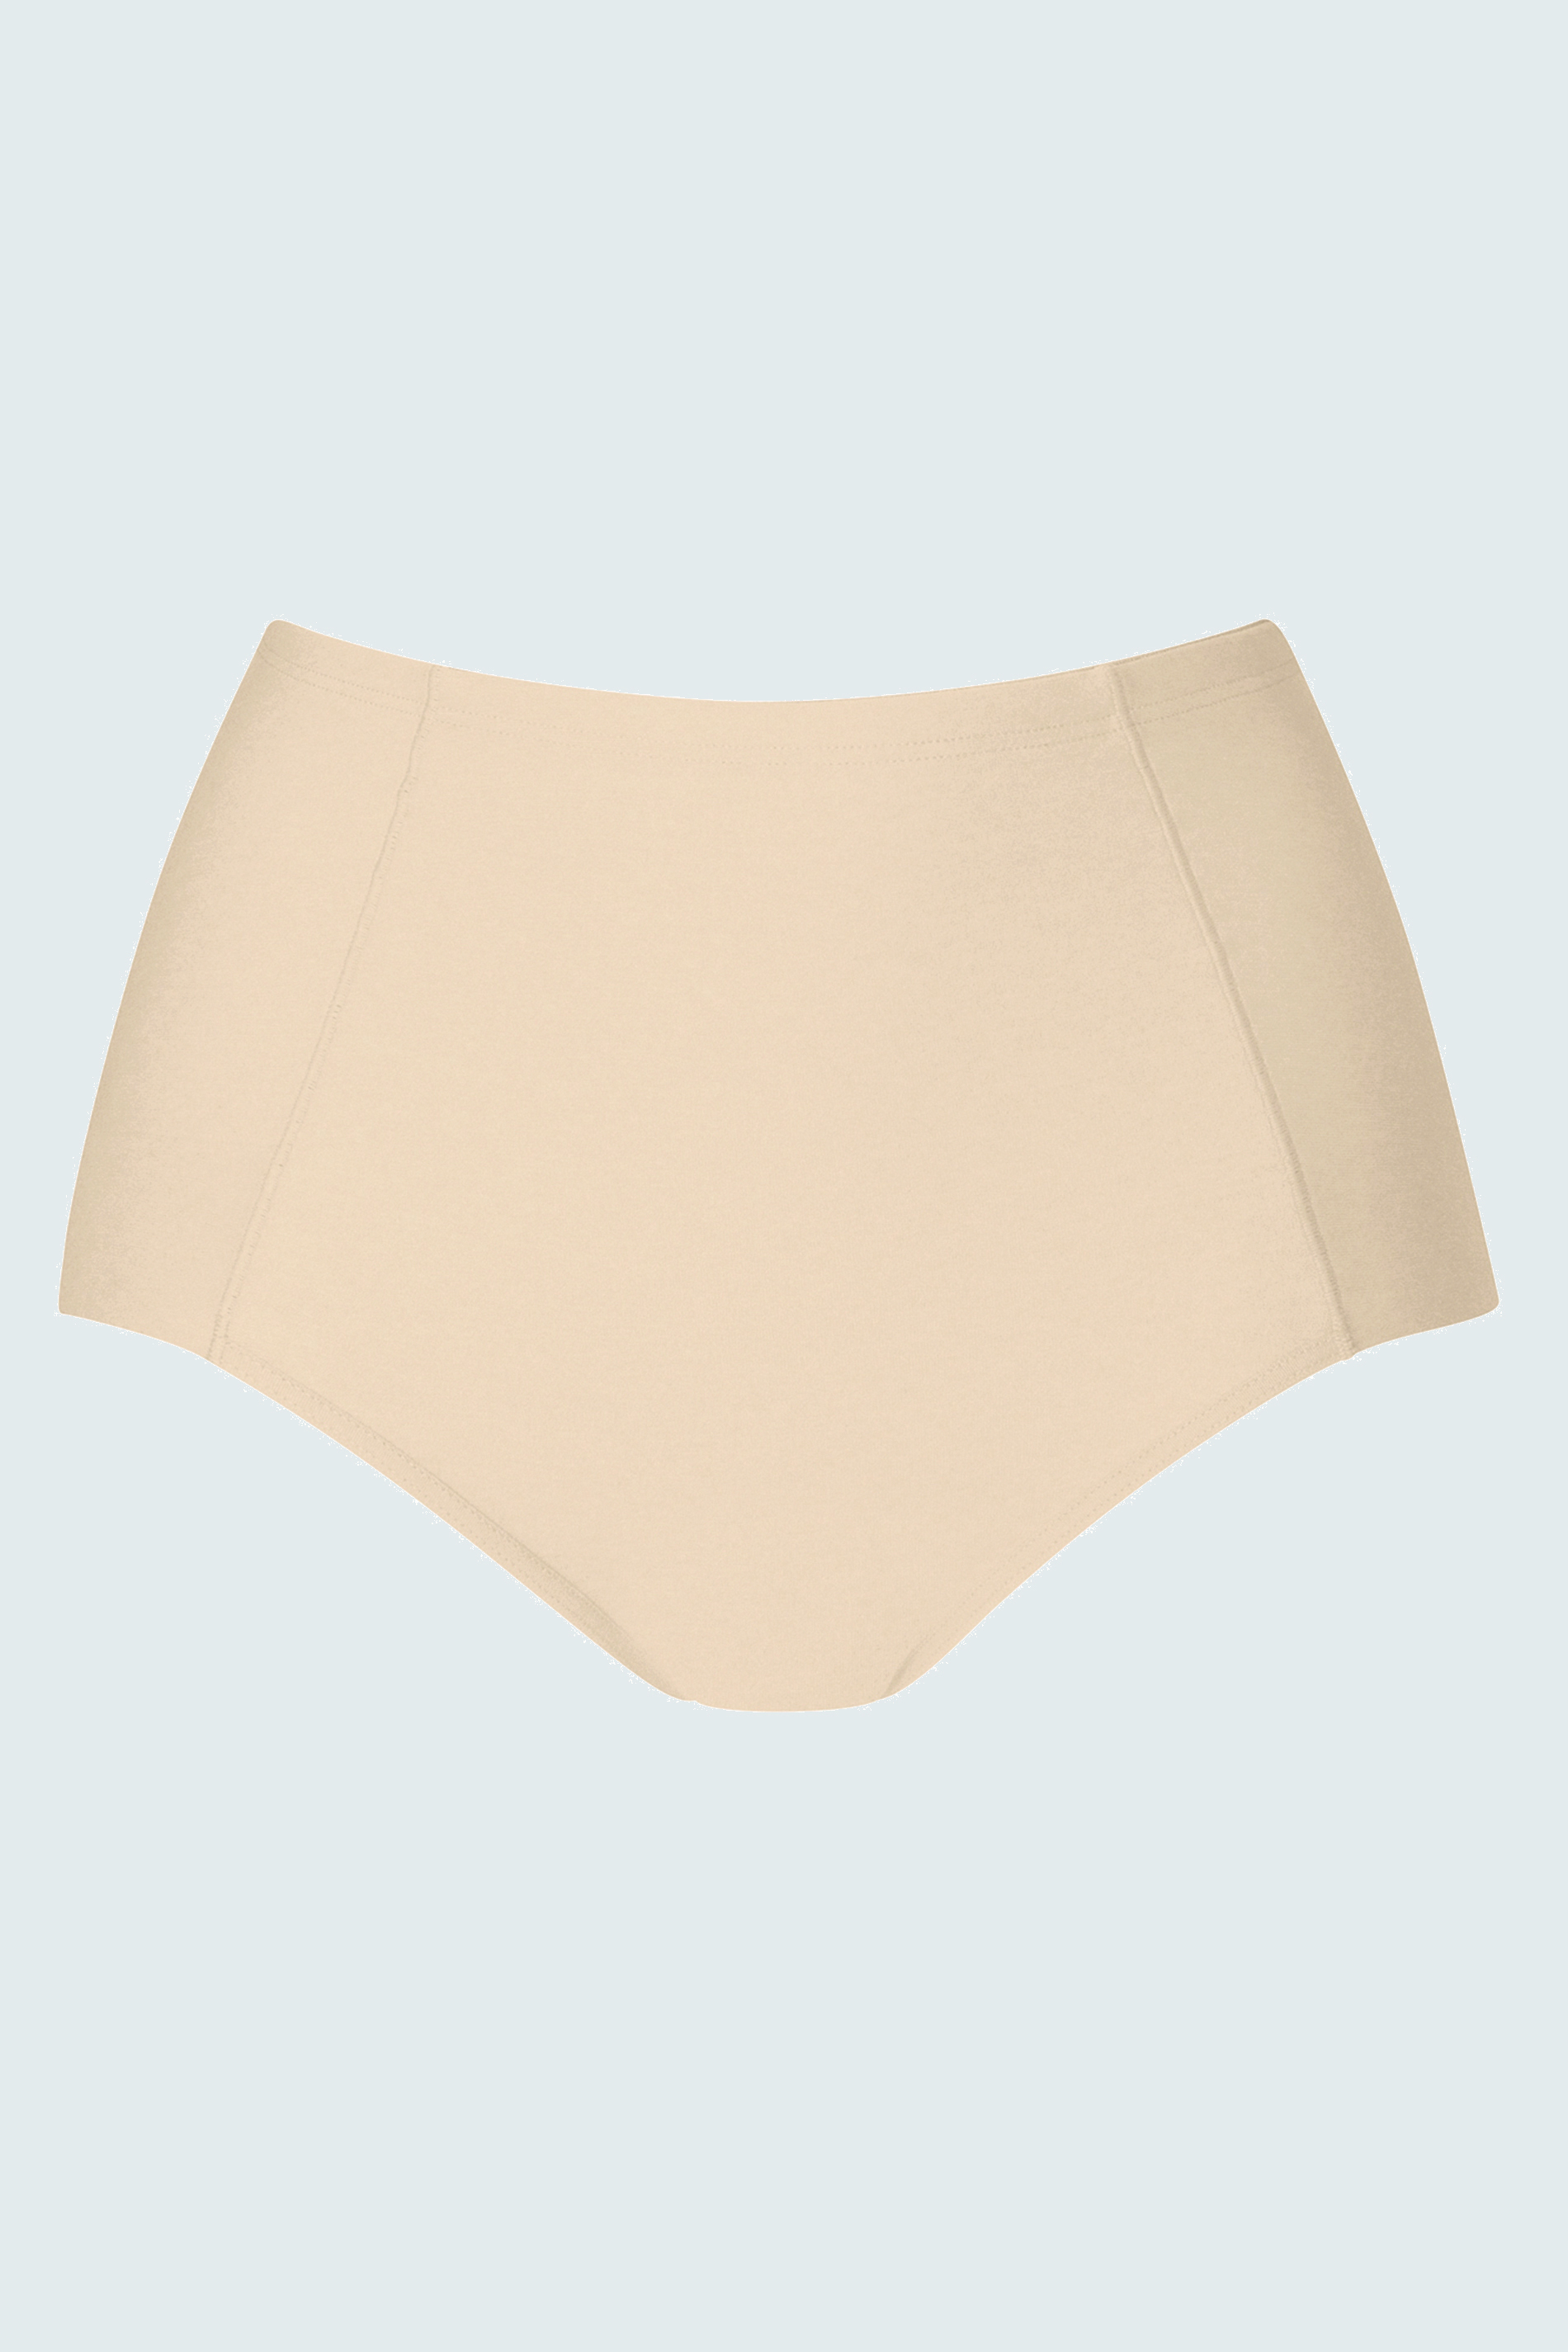 High waist pants Cream Tan Serie Nova Uitknippen | mey®